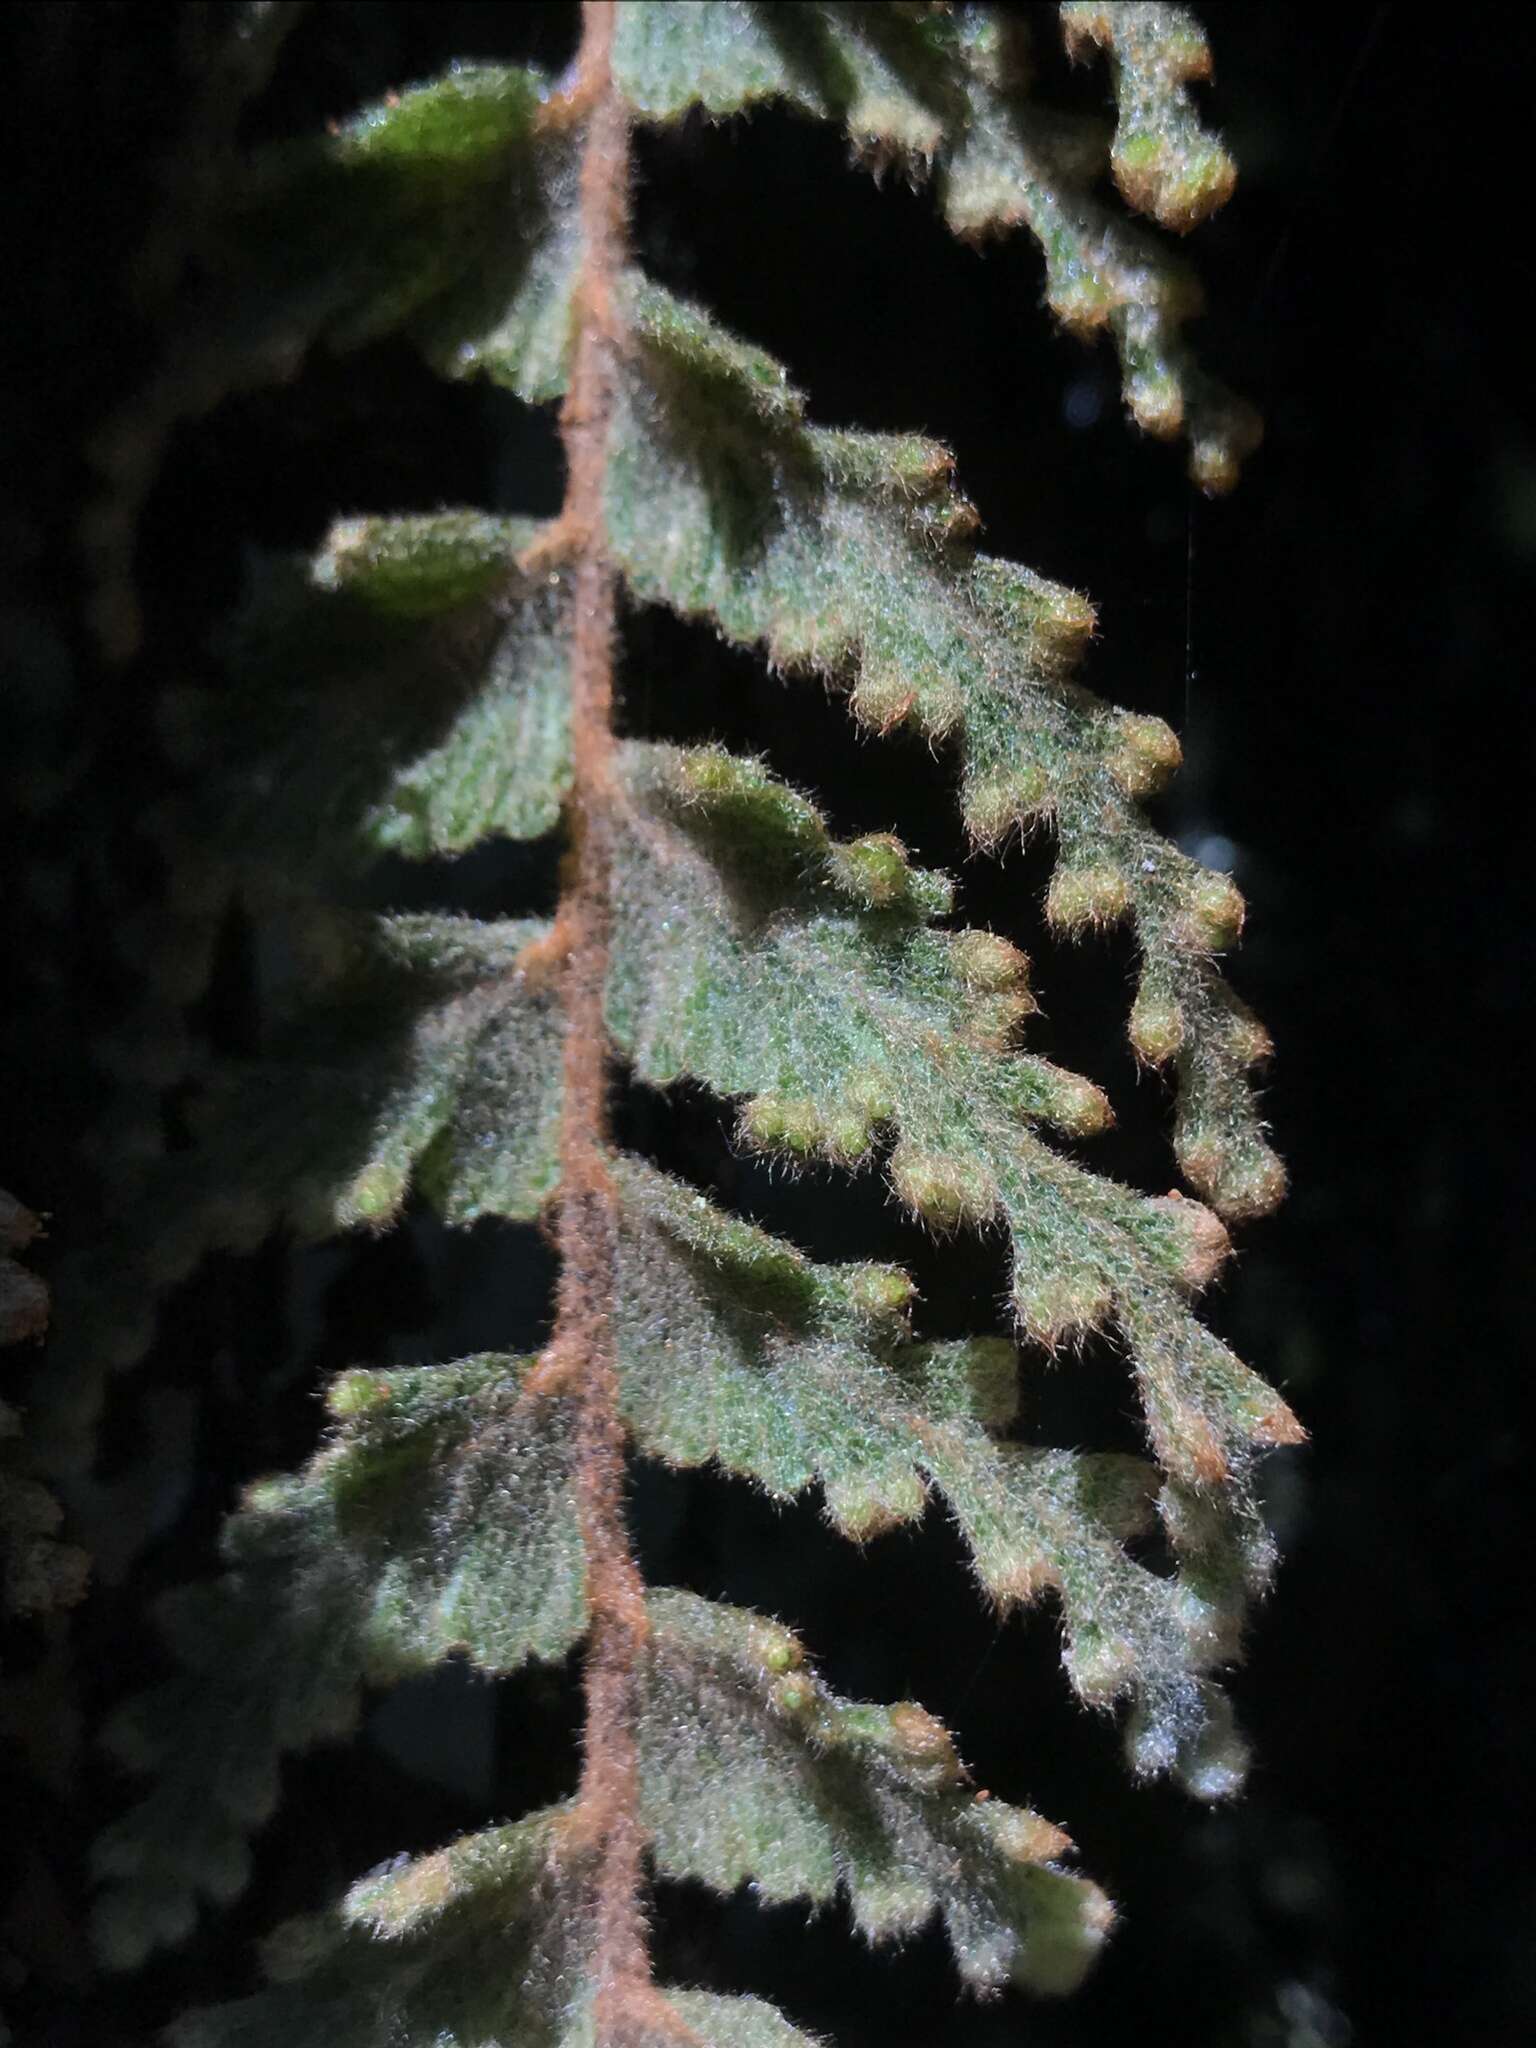 Image of Hymenophyllum tomentosum Kunze